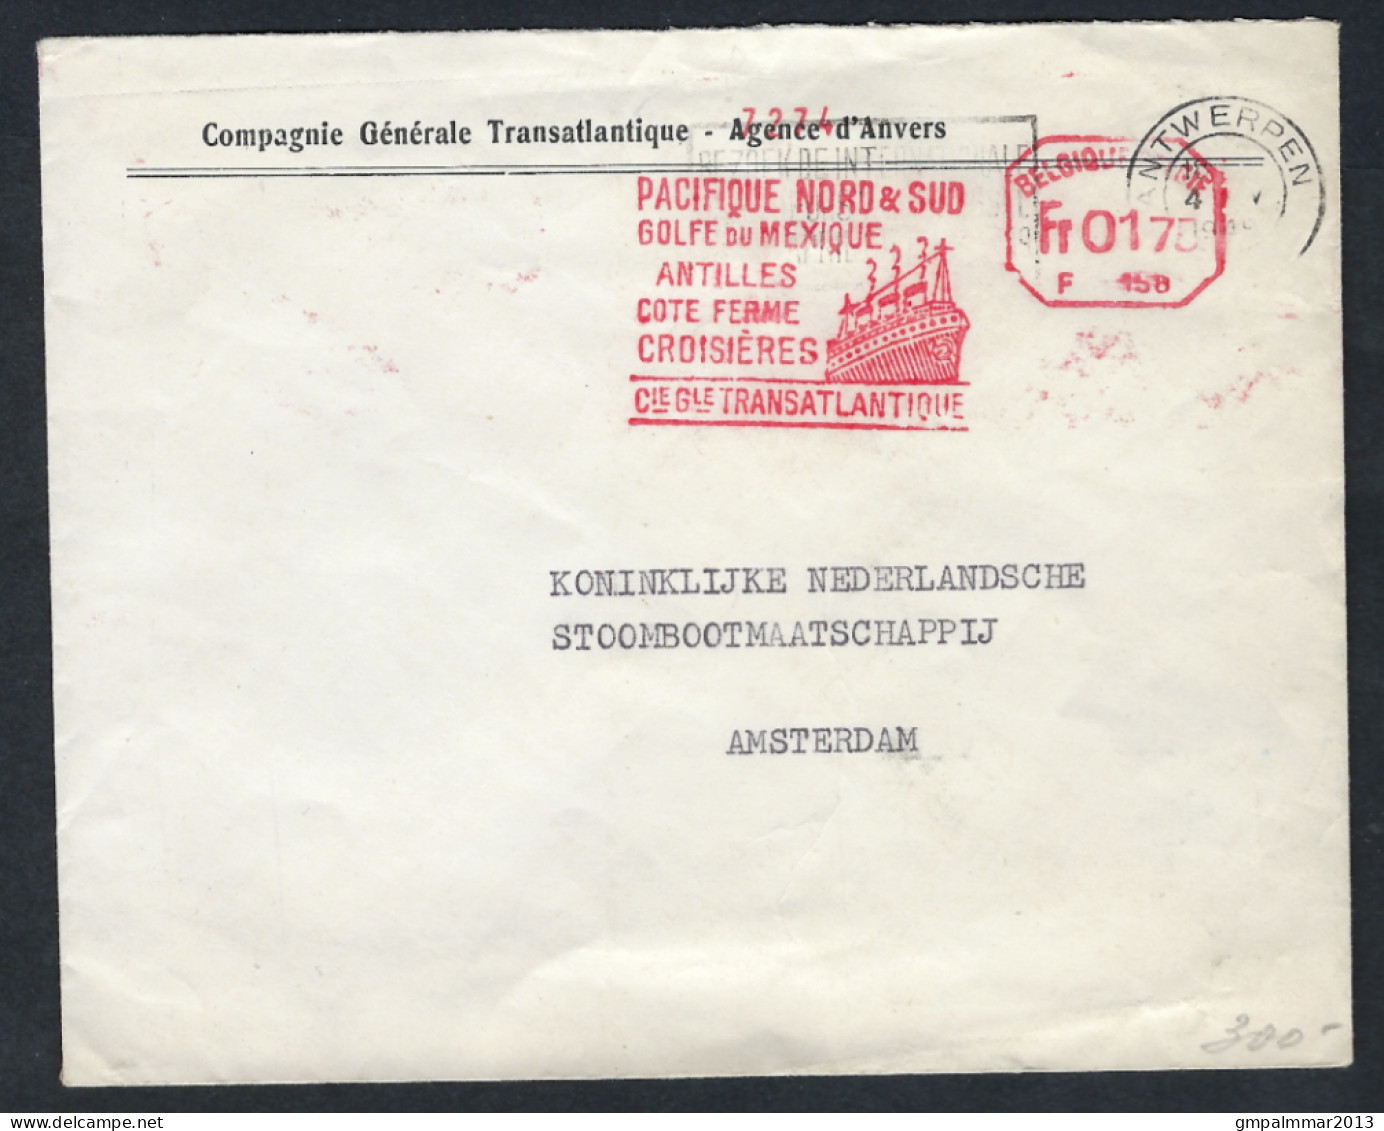 1949 Letter ANTWERP BELGIUM To AMSTERDAM NETHERLANDS Cancel PACIFIQUE NORD & SUD GOLFE DU MEXICO TRANSATLANTIQUE LOT 388 - Cartes Paquebot